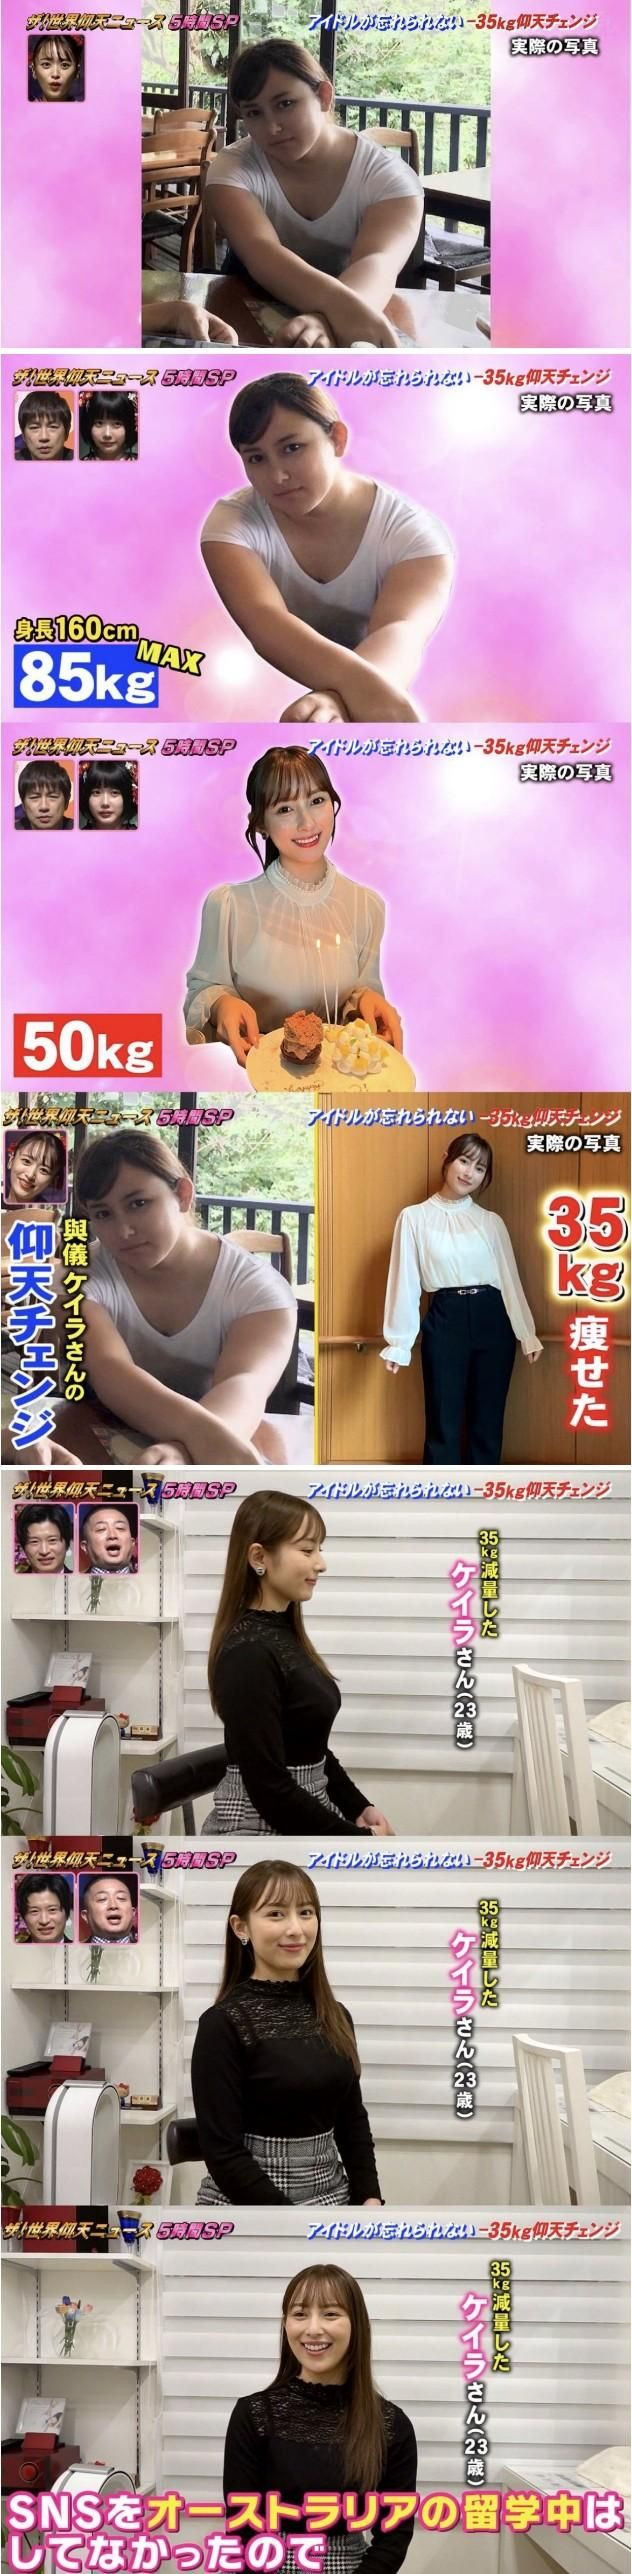 35kg 감량한 여자의 외모 변화 ㄷㄷ